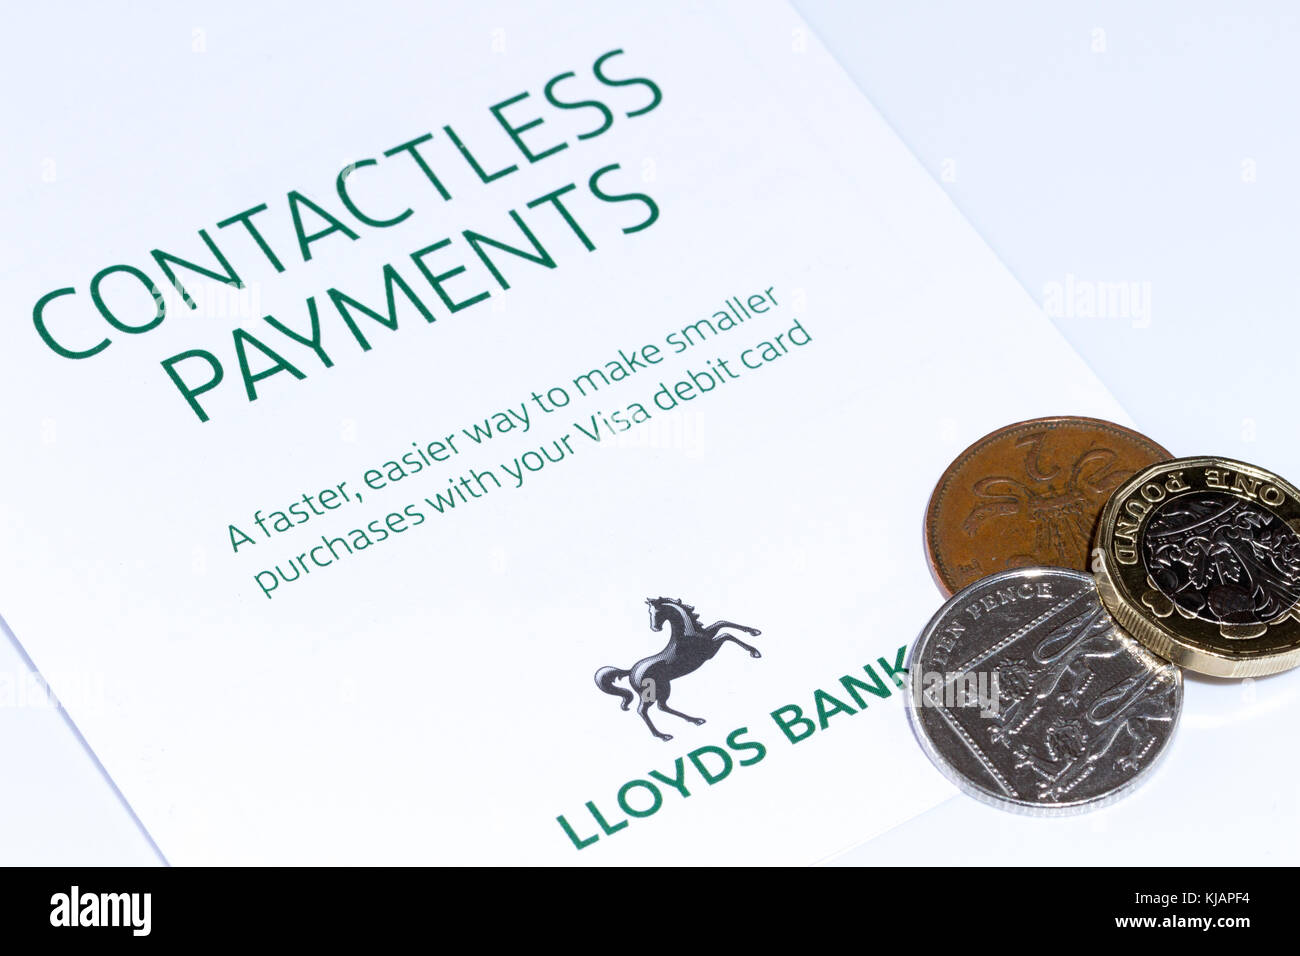 Opuscolo sui pagamenti contactless per la banca Lloyds e alcuni piccoli cambiamenti, monete inglesi in sterline, Regno Unito Foto Stock